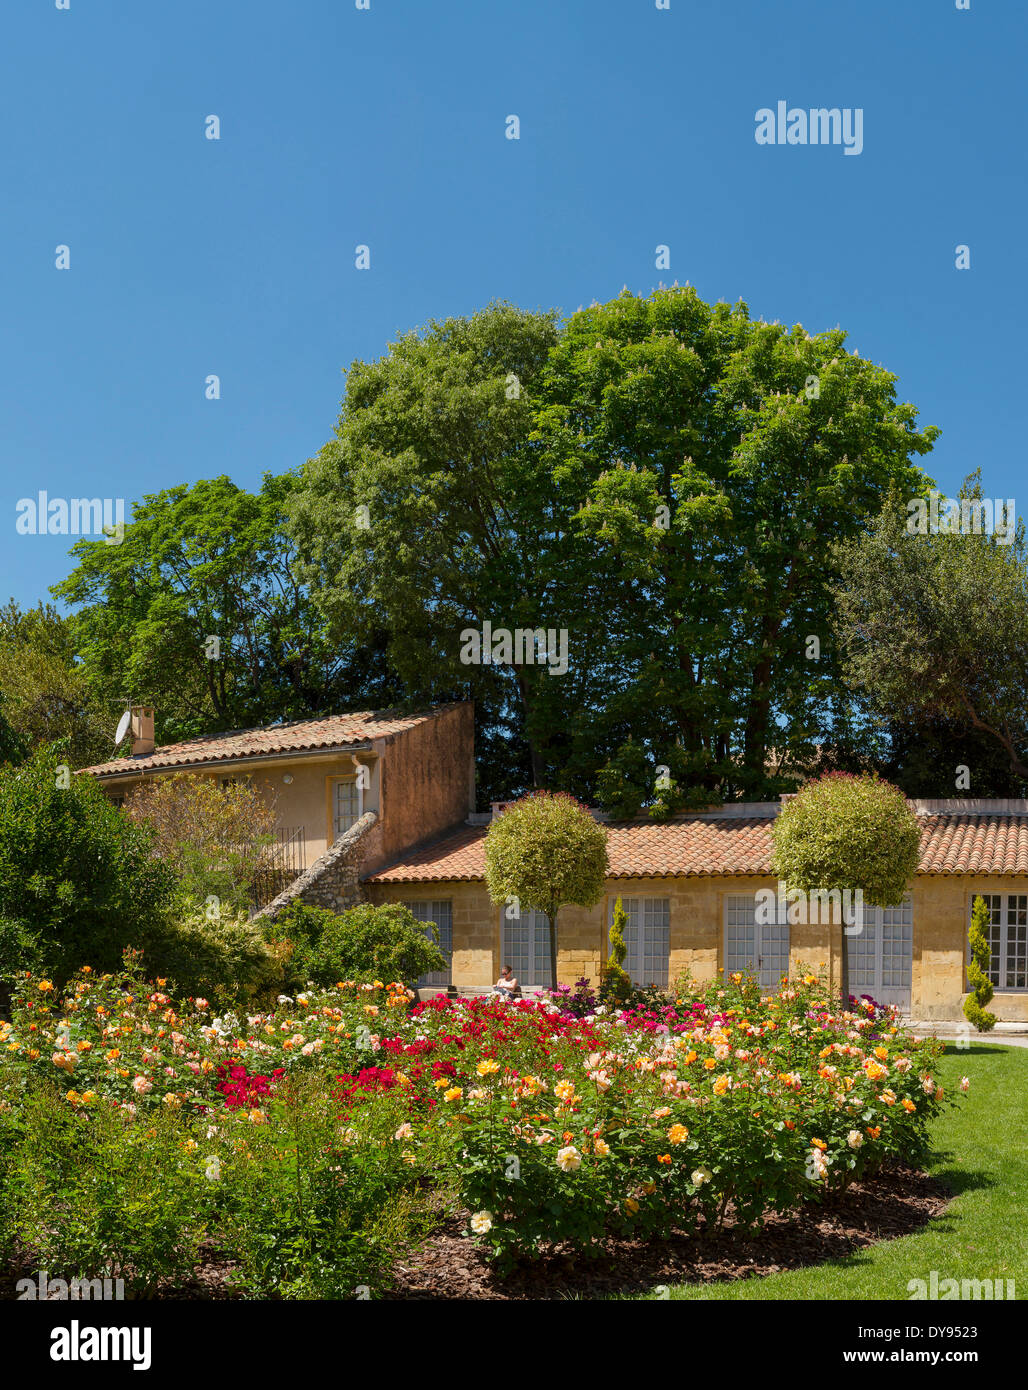 Rosegarden, Parc Vendome, house, flowers, spring, people, garden, park, Aix en Provence, Bouches du Rhone, France, Europe, Stock Photo